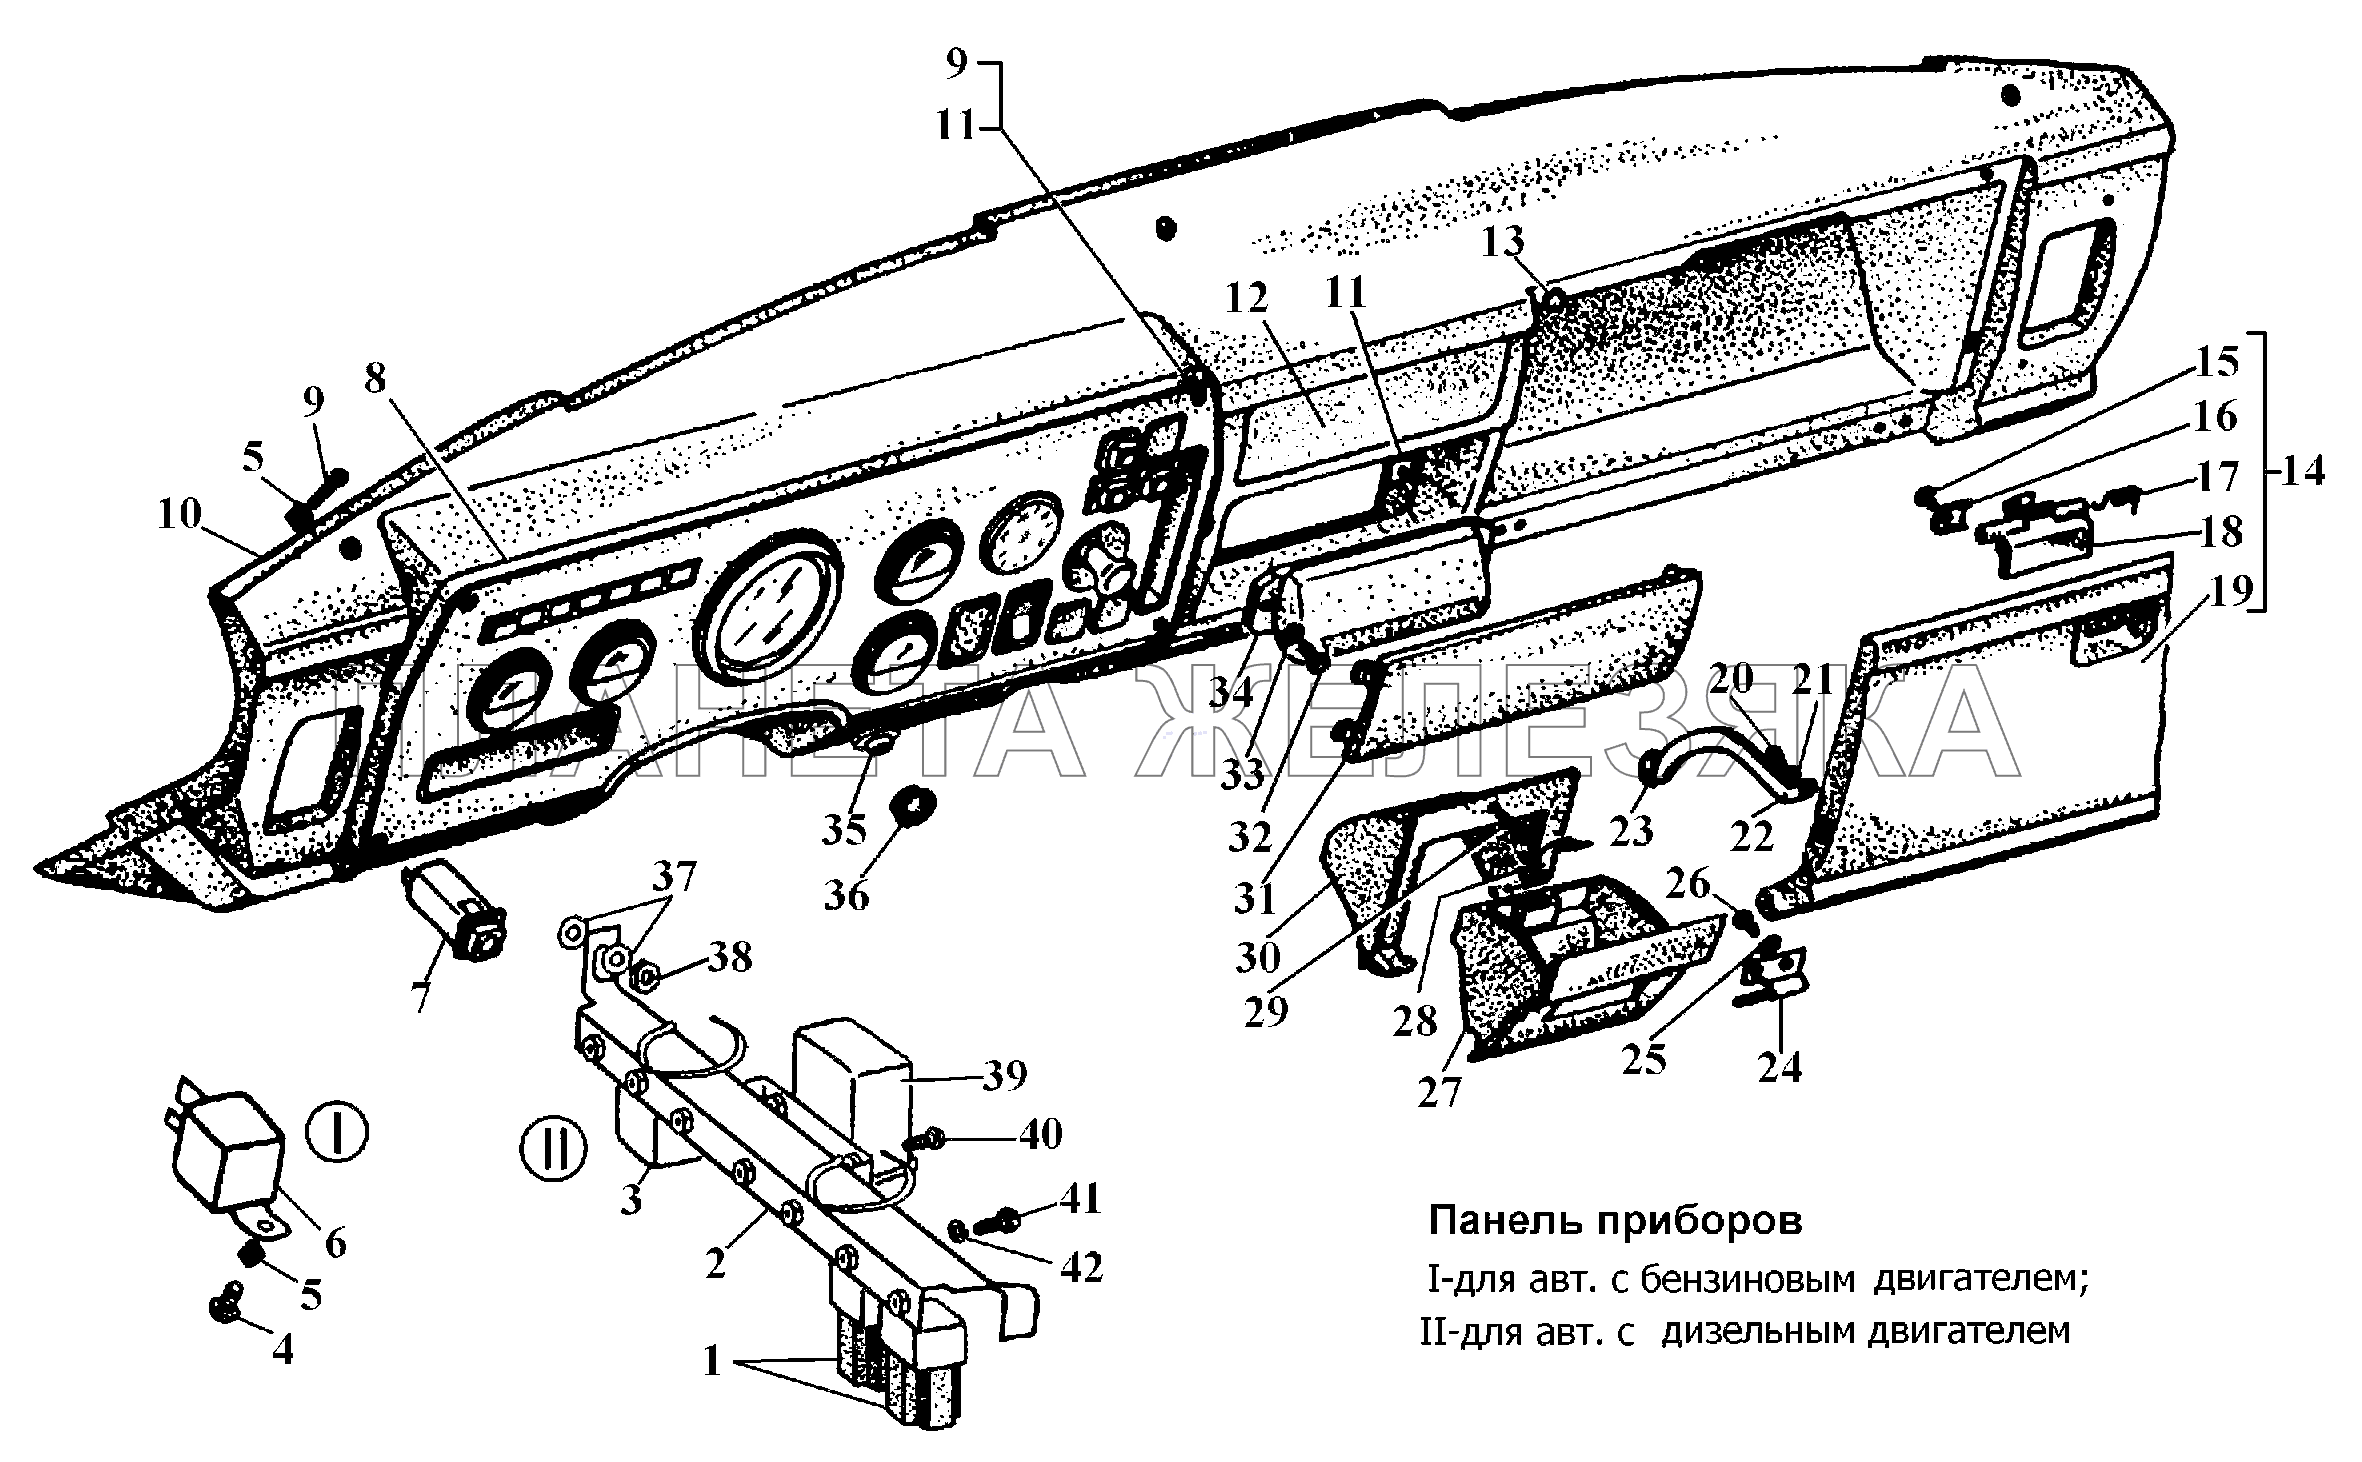 Панель приборов ГАЗ-3308